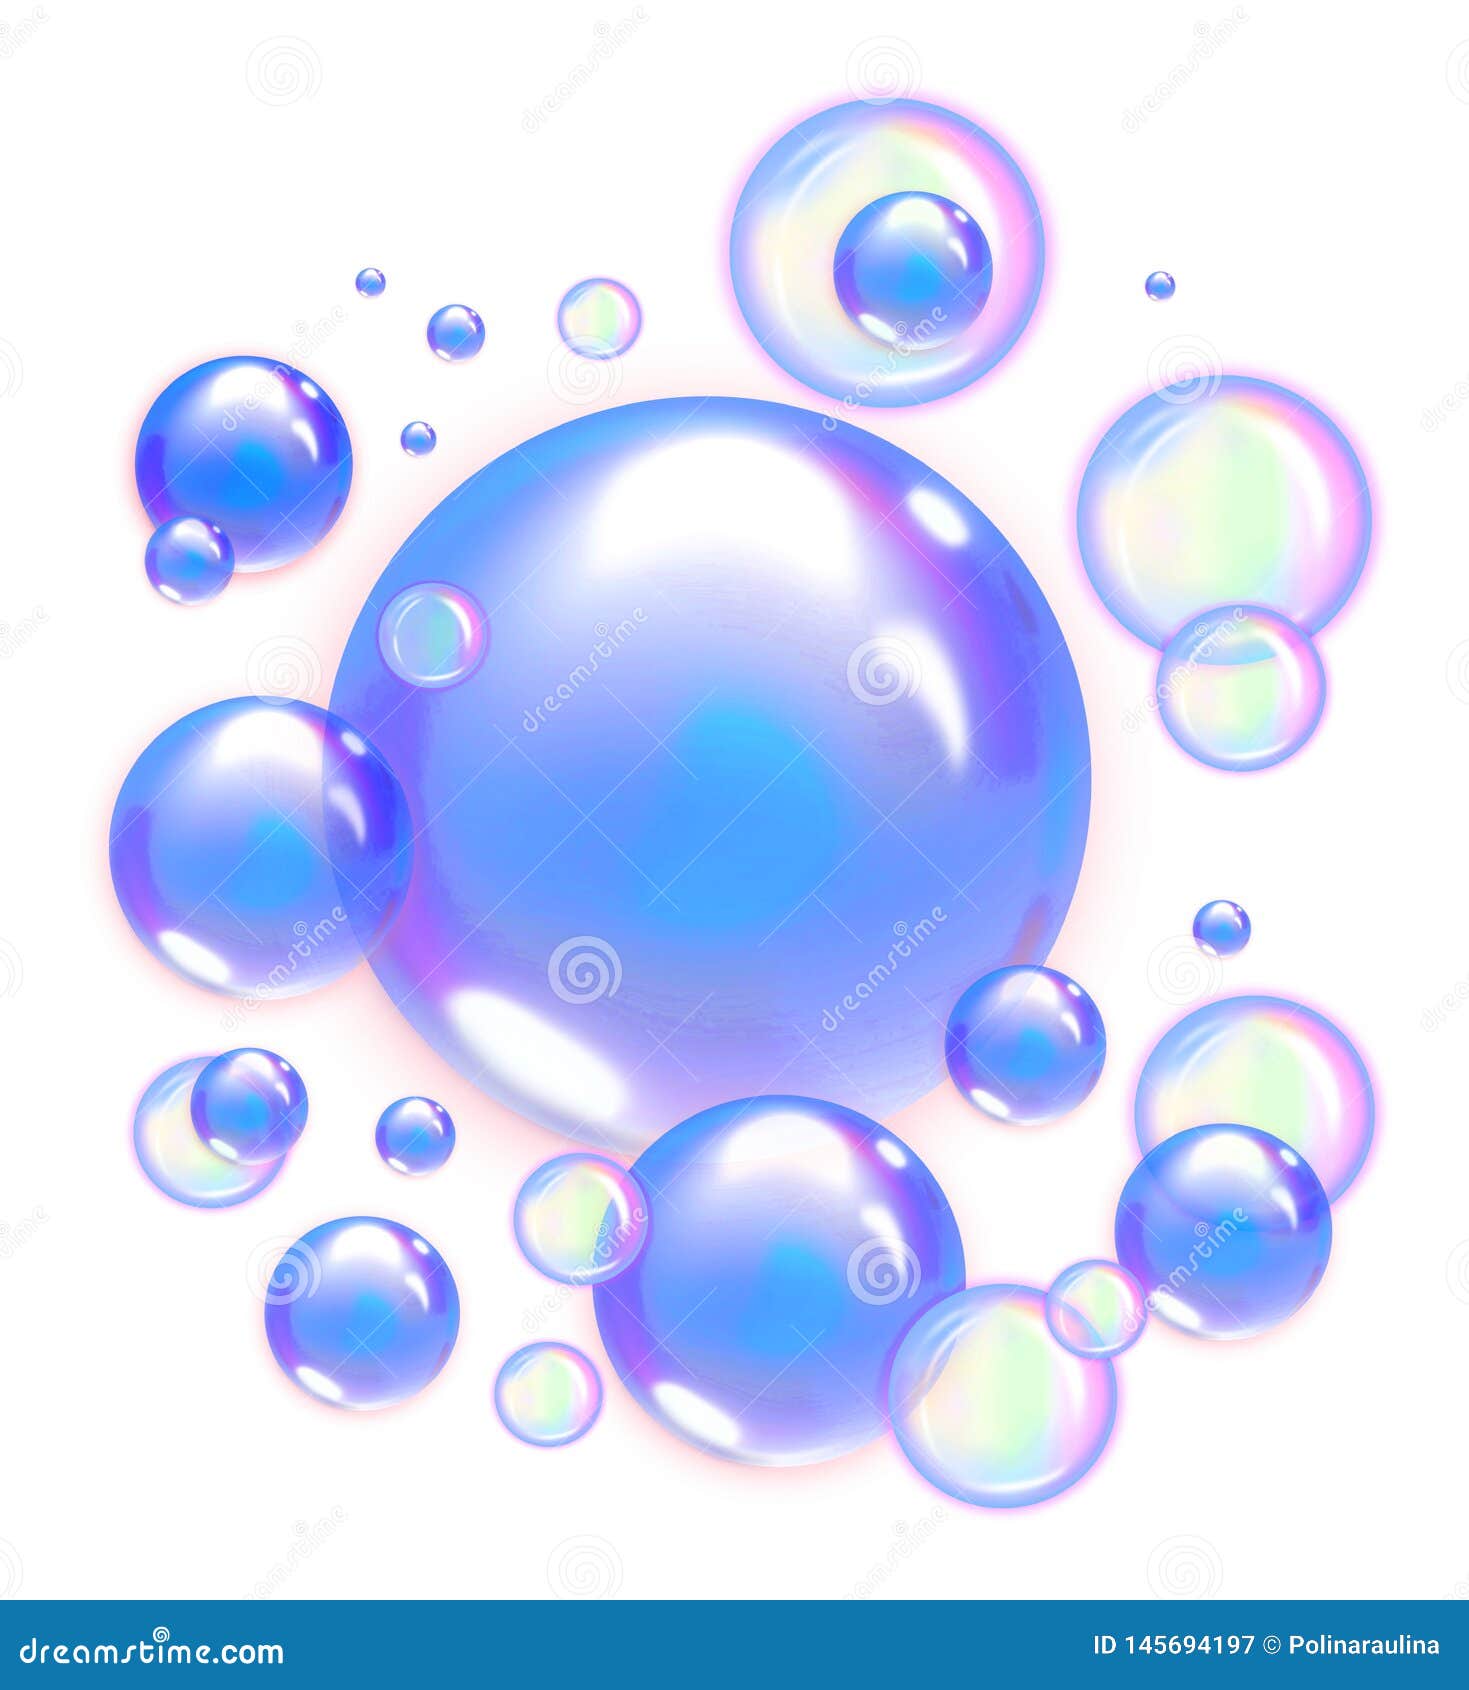 Bubbles Png Stock Illustrations – 834 Bubbles Png Stock Illustrations,  Vectors & Clipart - Dreamstime